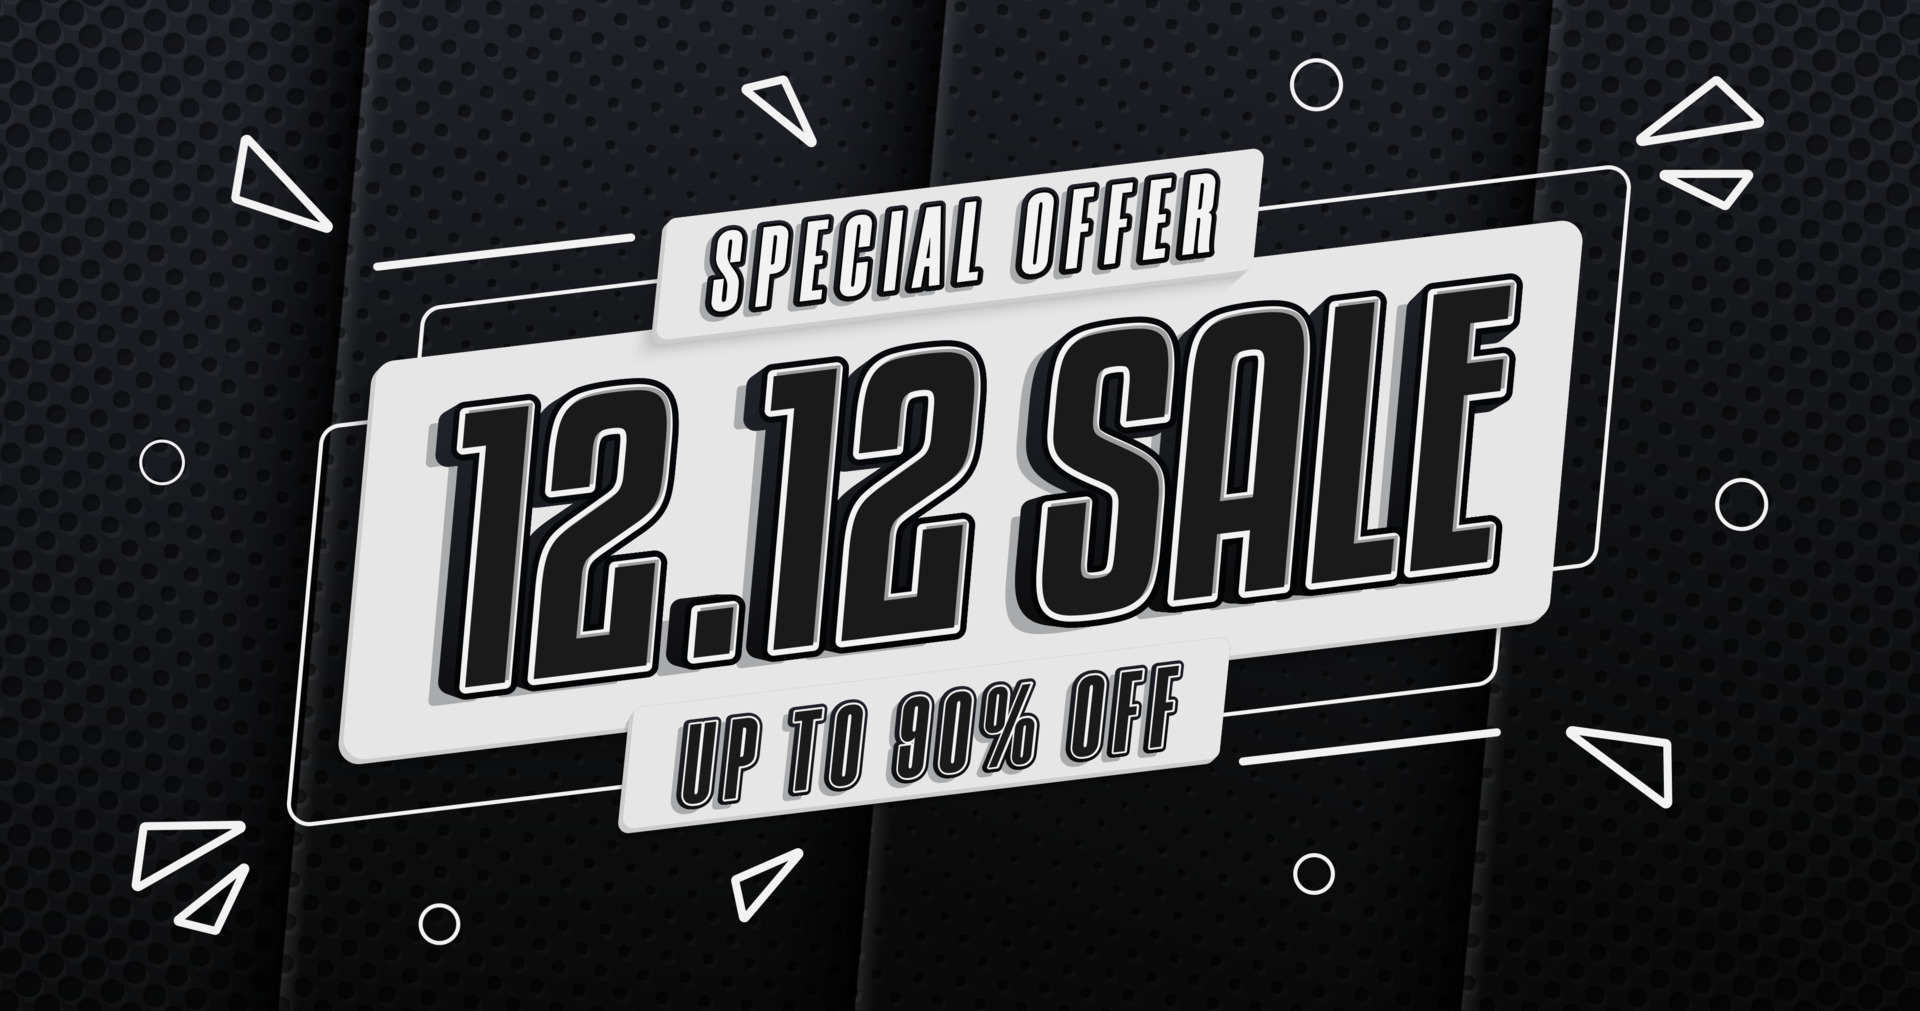 Desconto especial 1212 mega banner de modelo de venda com espaço em branco  para venda de produtos com design de fundo preto gradiente abstrato